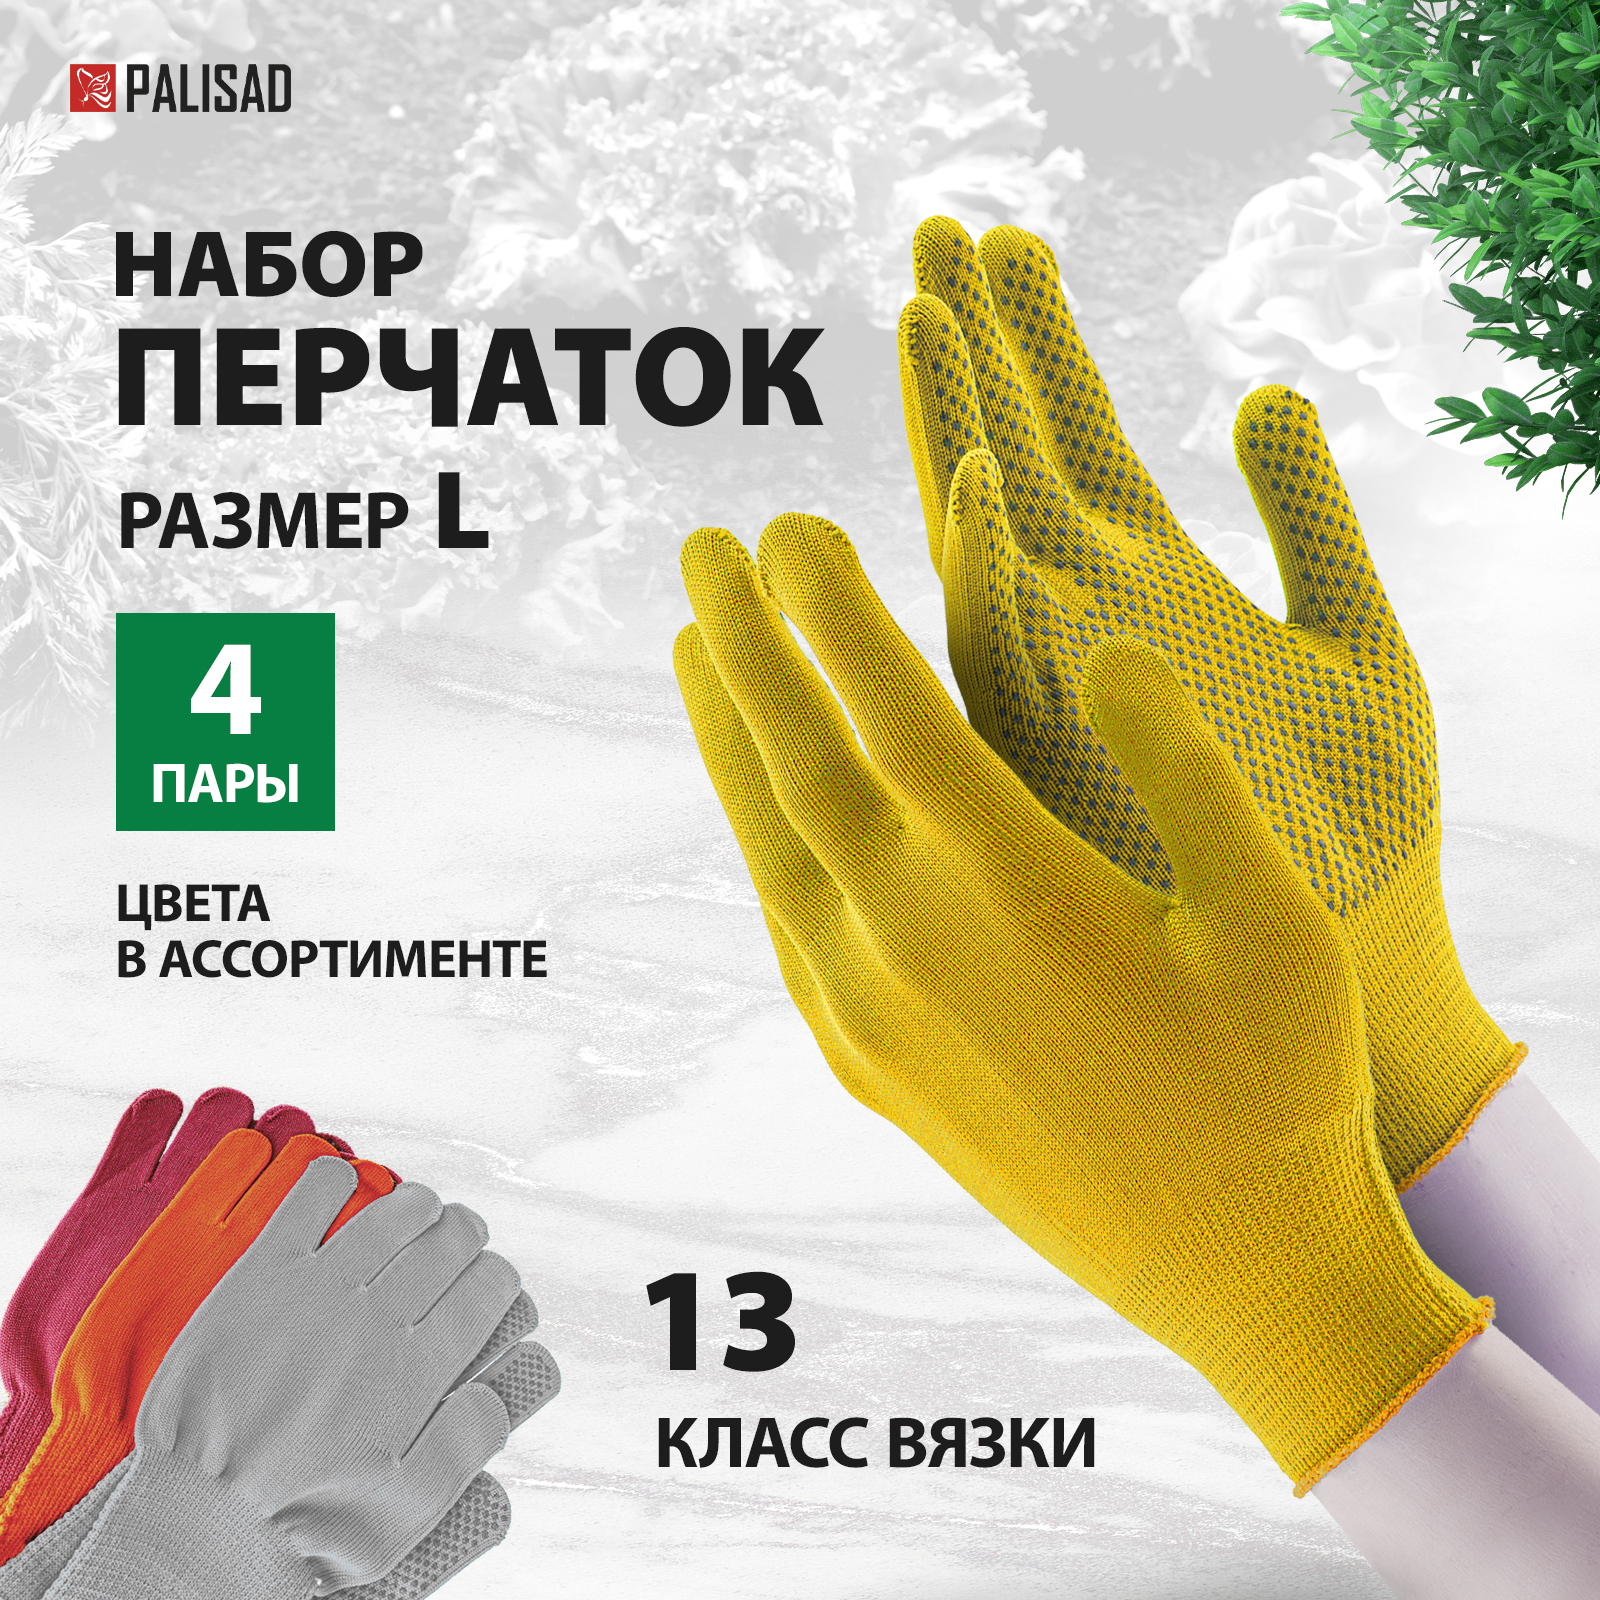 Перчатки в наборе, 4 пары, цвета в ассортименте, ПВХ точка, L, Россия, PALISAD 67852 перчатки землекопа с когтями palisad 67748